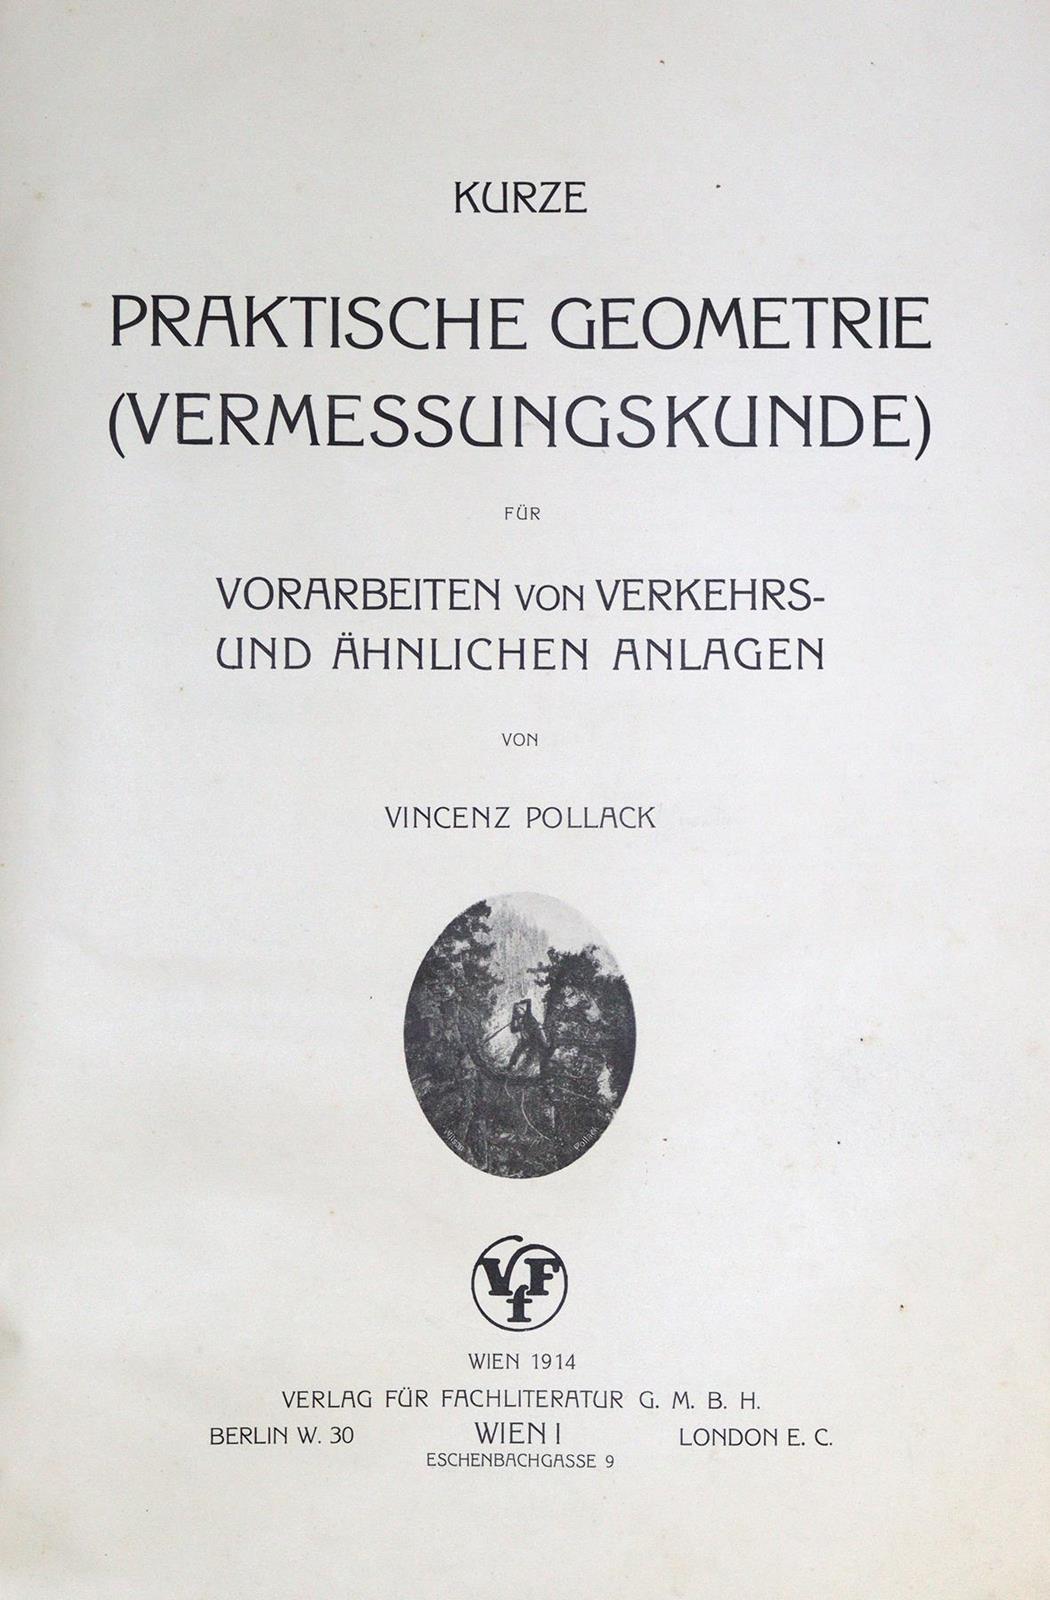 "Grosse Contor- und Bureau-Karte des Deutschen Reiches". | Bild Nr.7